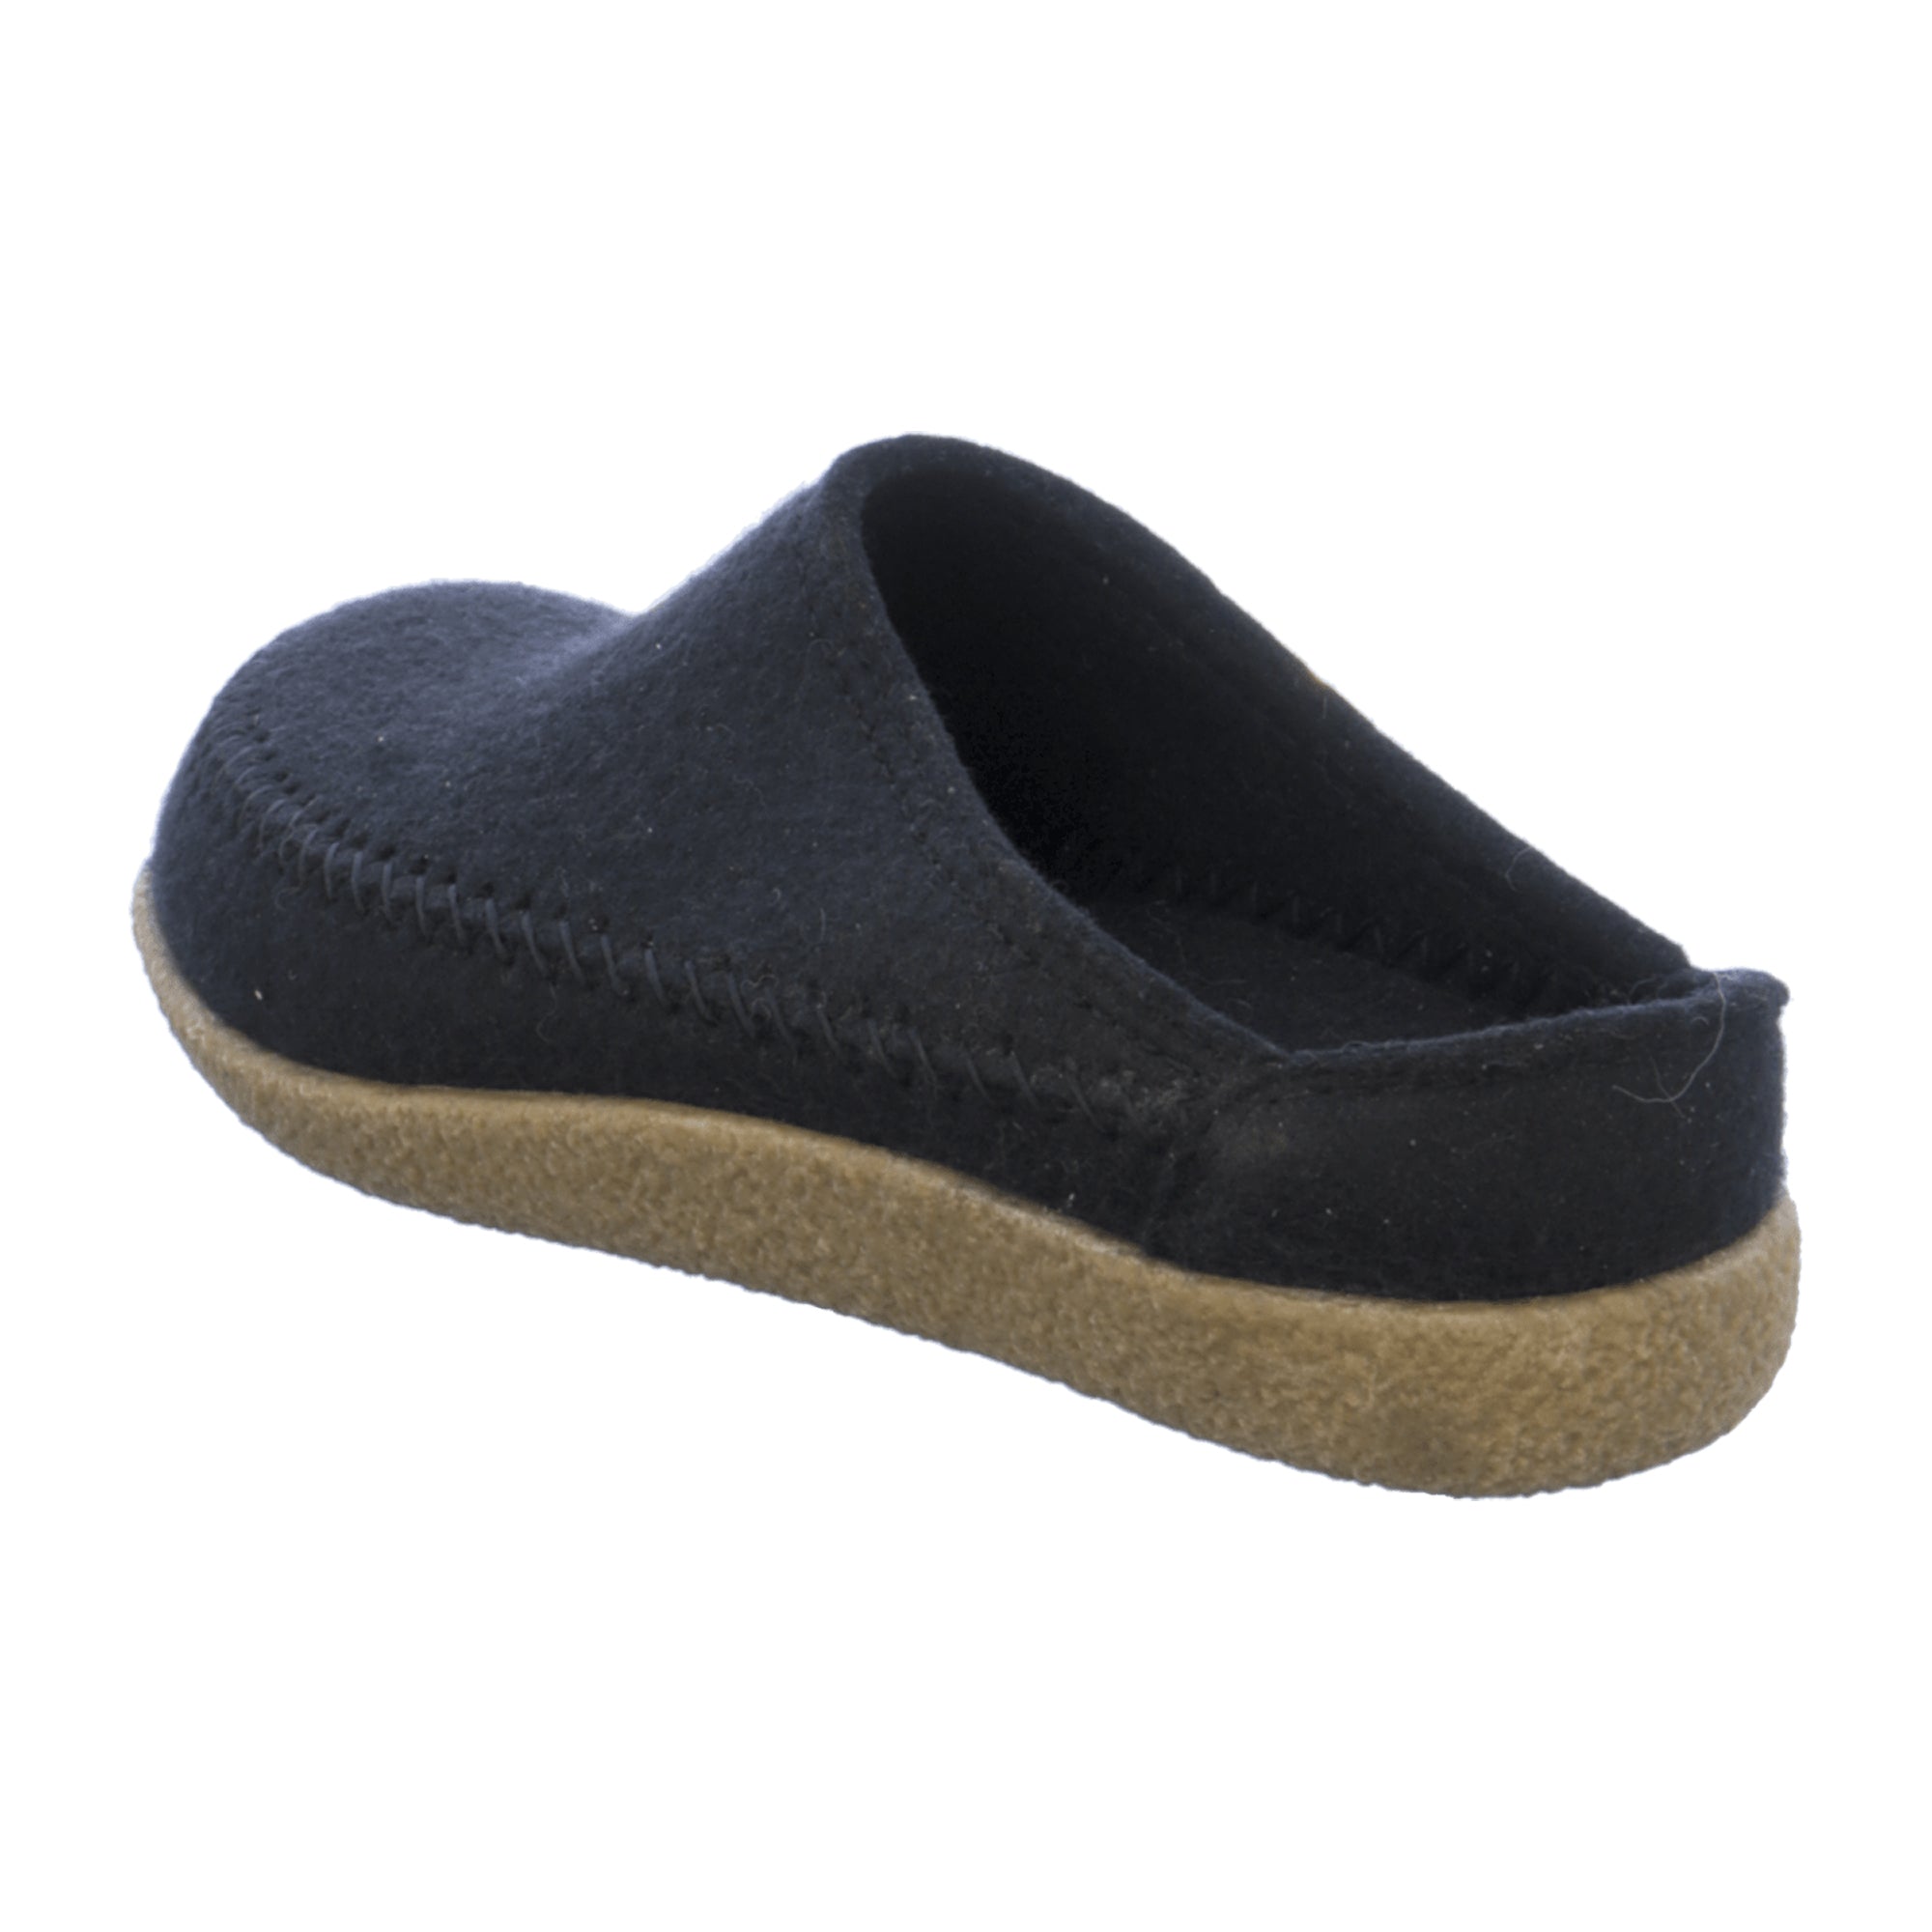 Men's Haflinger Black Wool Slippers - Stylish & Durable